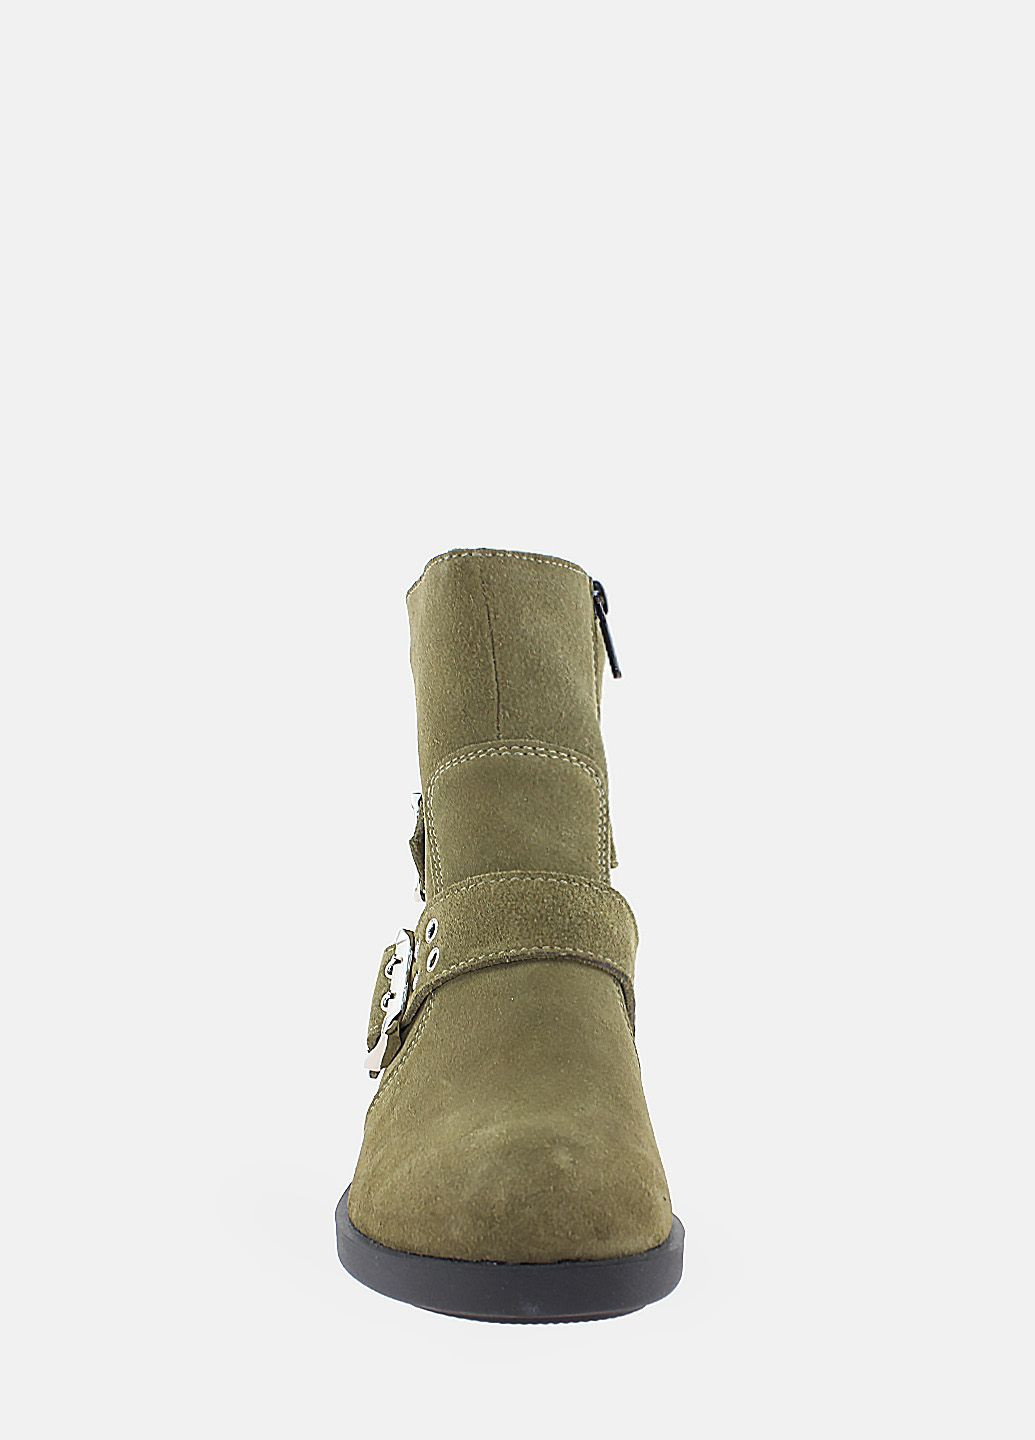 Осенние ботинки rk2027-11 зеленый Kseniya из натуральной замши